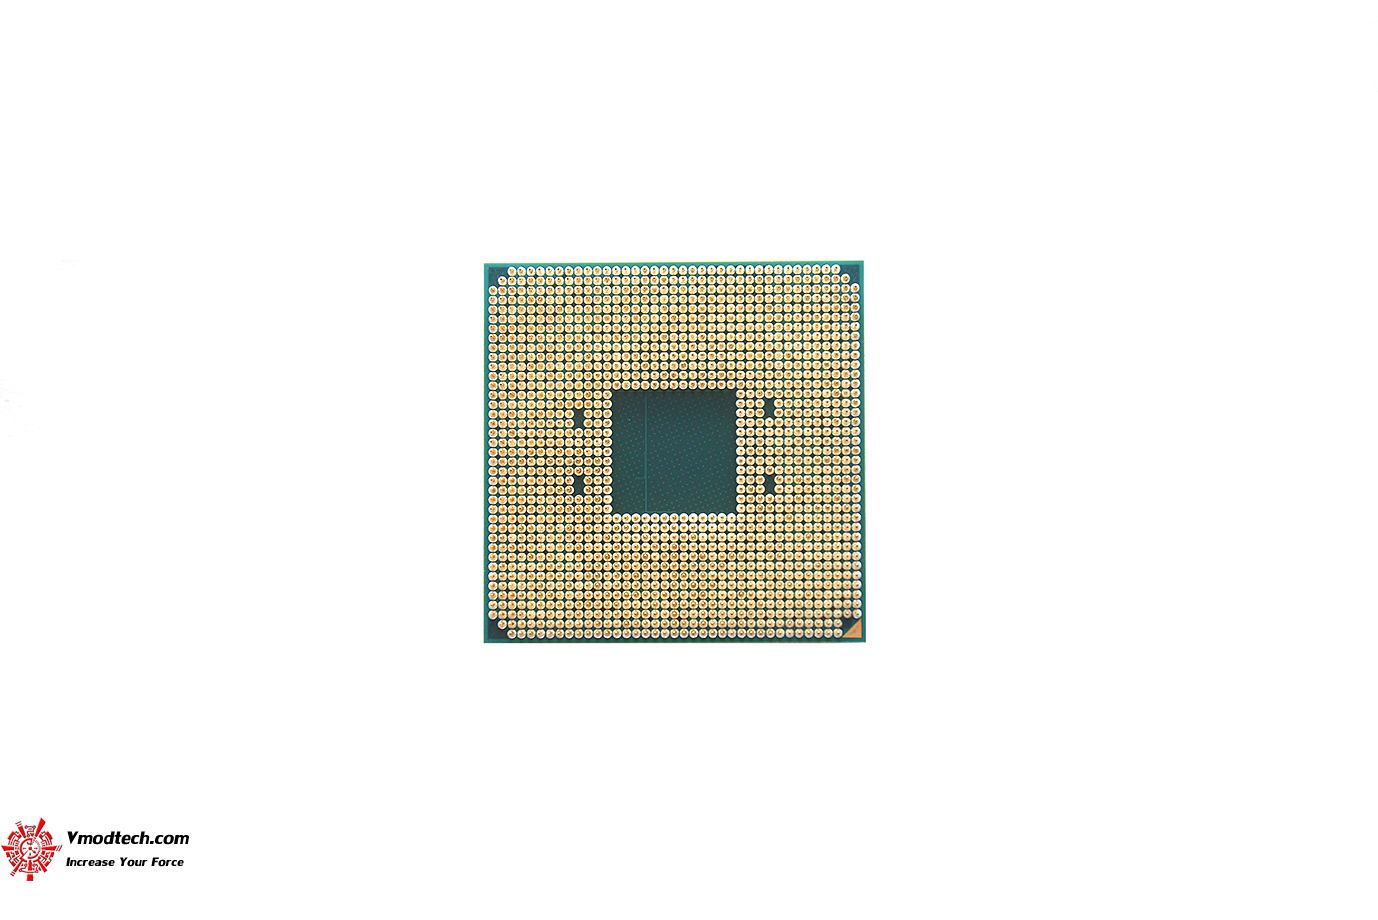 dsc 4759 AMD RYZEN 7 5700X PROCESSOR REVIEW